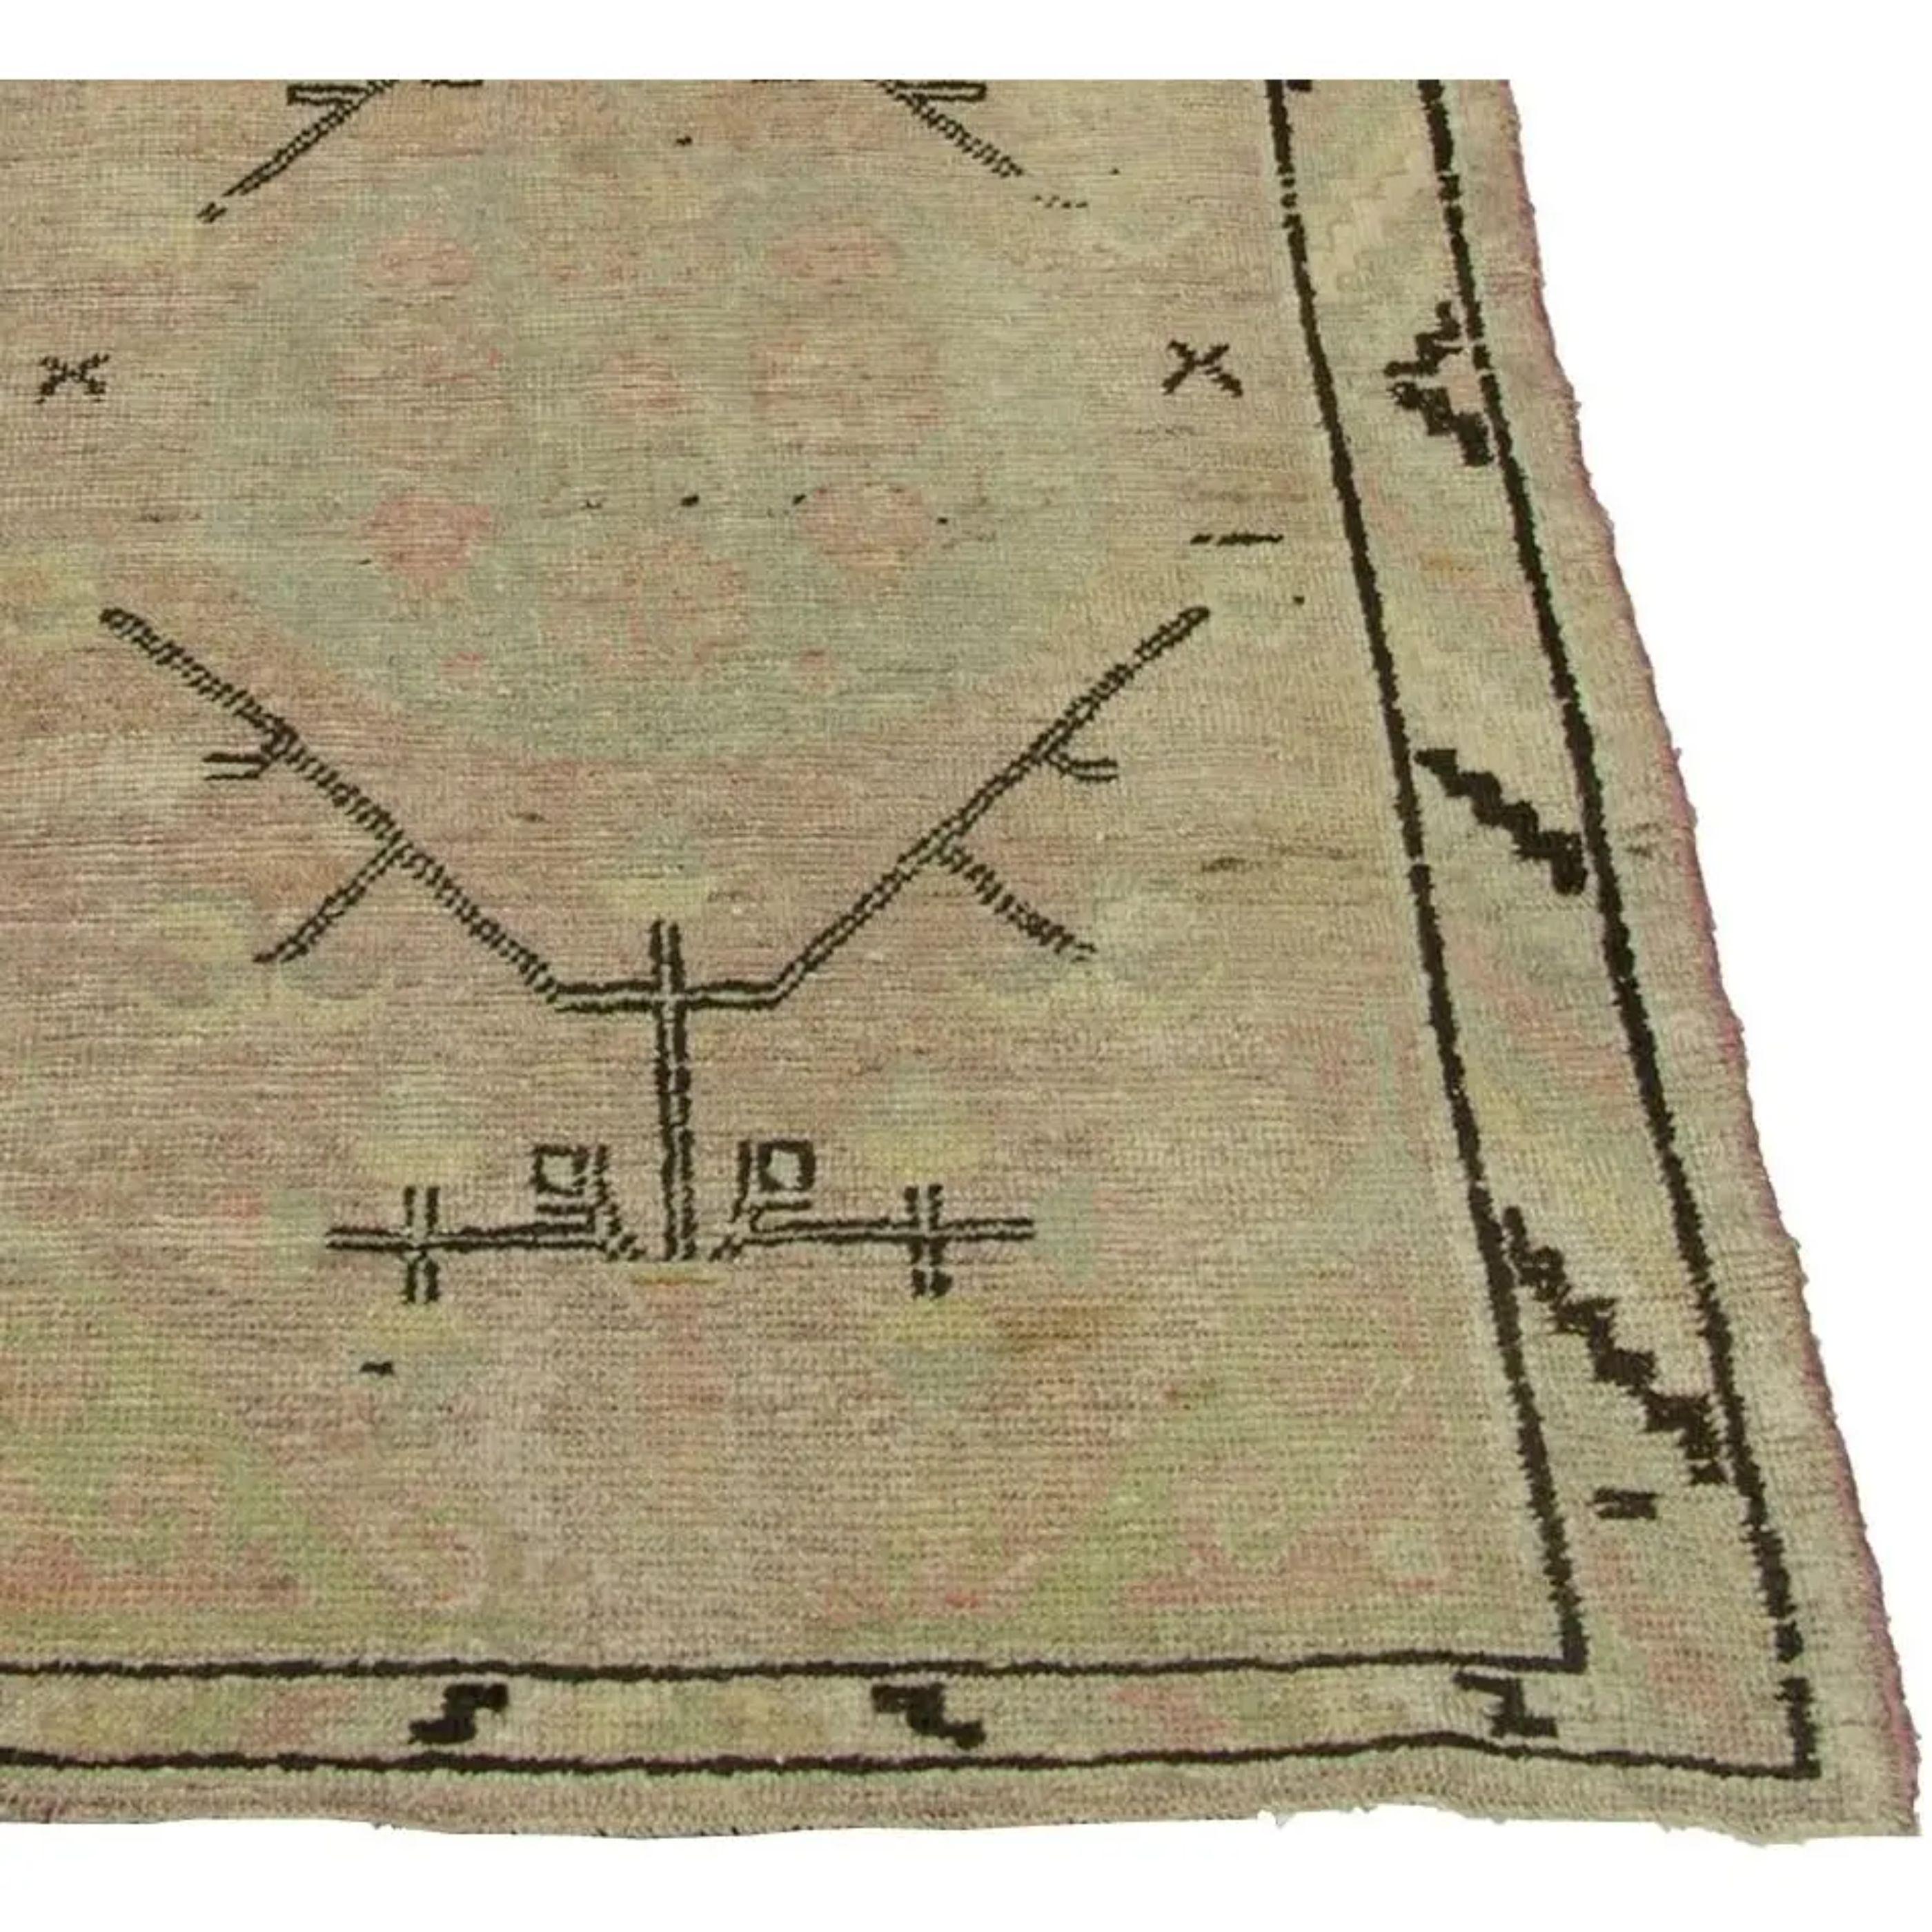 Zum Verkauf steht ein antiker Samakhand-Teppich. Es handelt sich um einen usbekischen Teppich mit Stammesmotiven und einem helleren Rosa im gesamten Teppich.  

